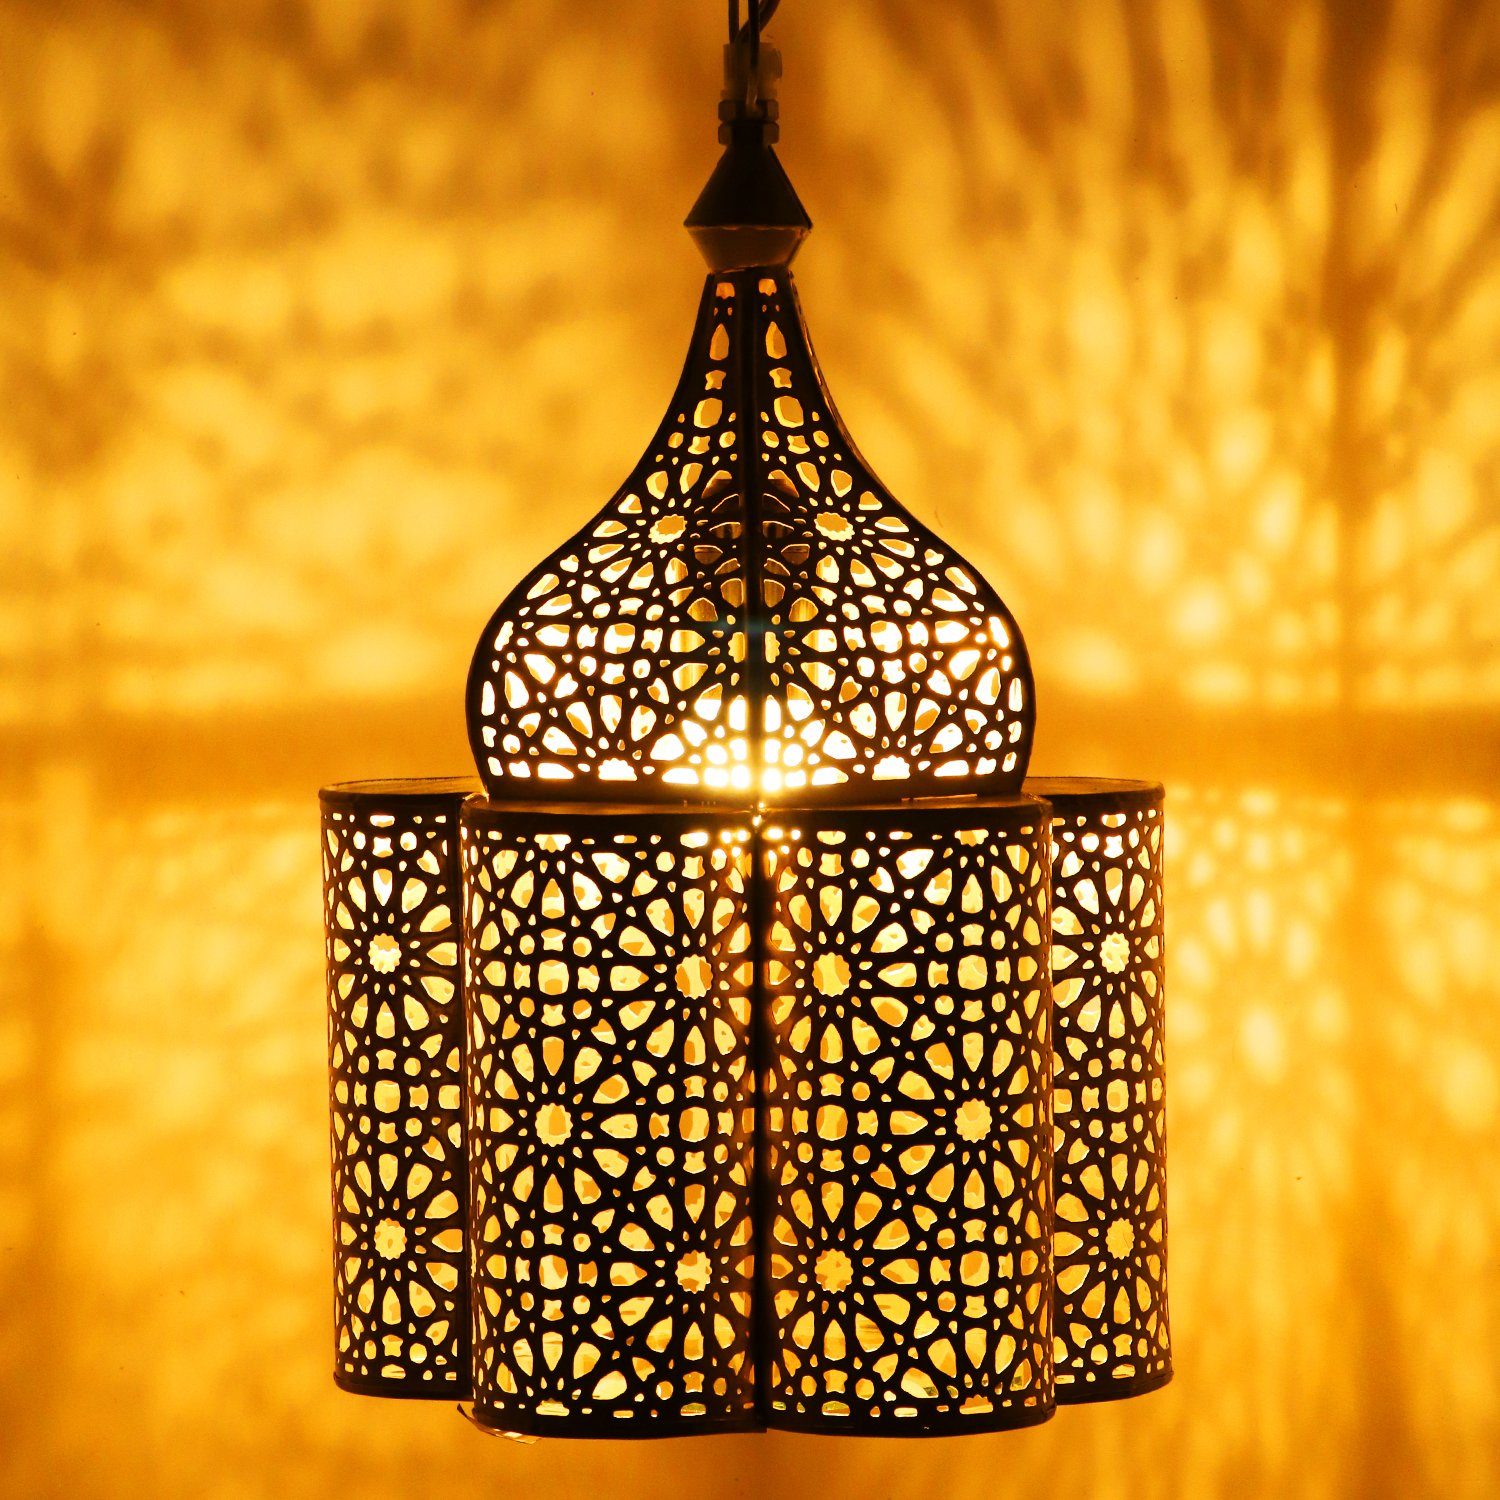 Marrakesch Orient & Mediterran Interior Deckenleuchte Orientalische Lampe  Pendelleuchte Feryal 37cm E27 Lampenfassung, Marokkanische Design  Hängeleuchte Leuchte aus Marokko, Orient Lampen für Wohnzimmer Küche oder  Hängend über den Esstisch